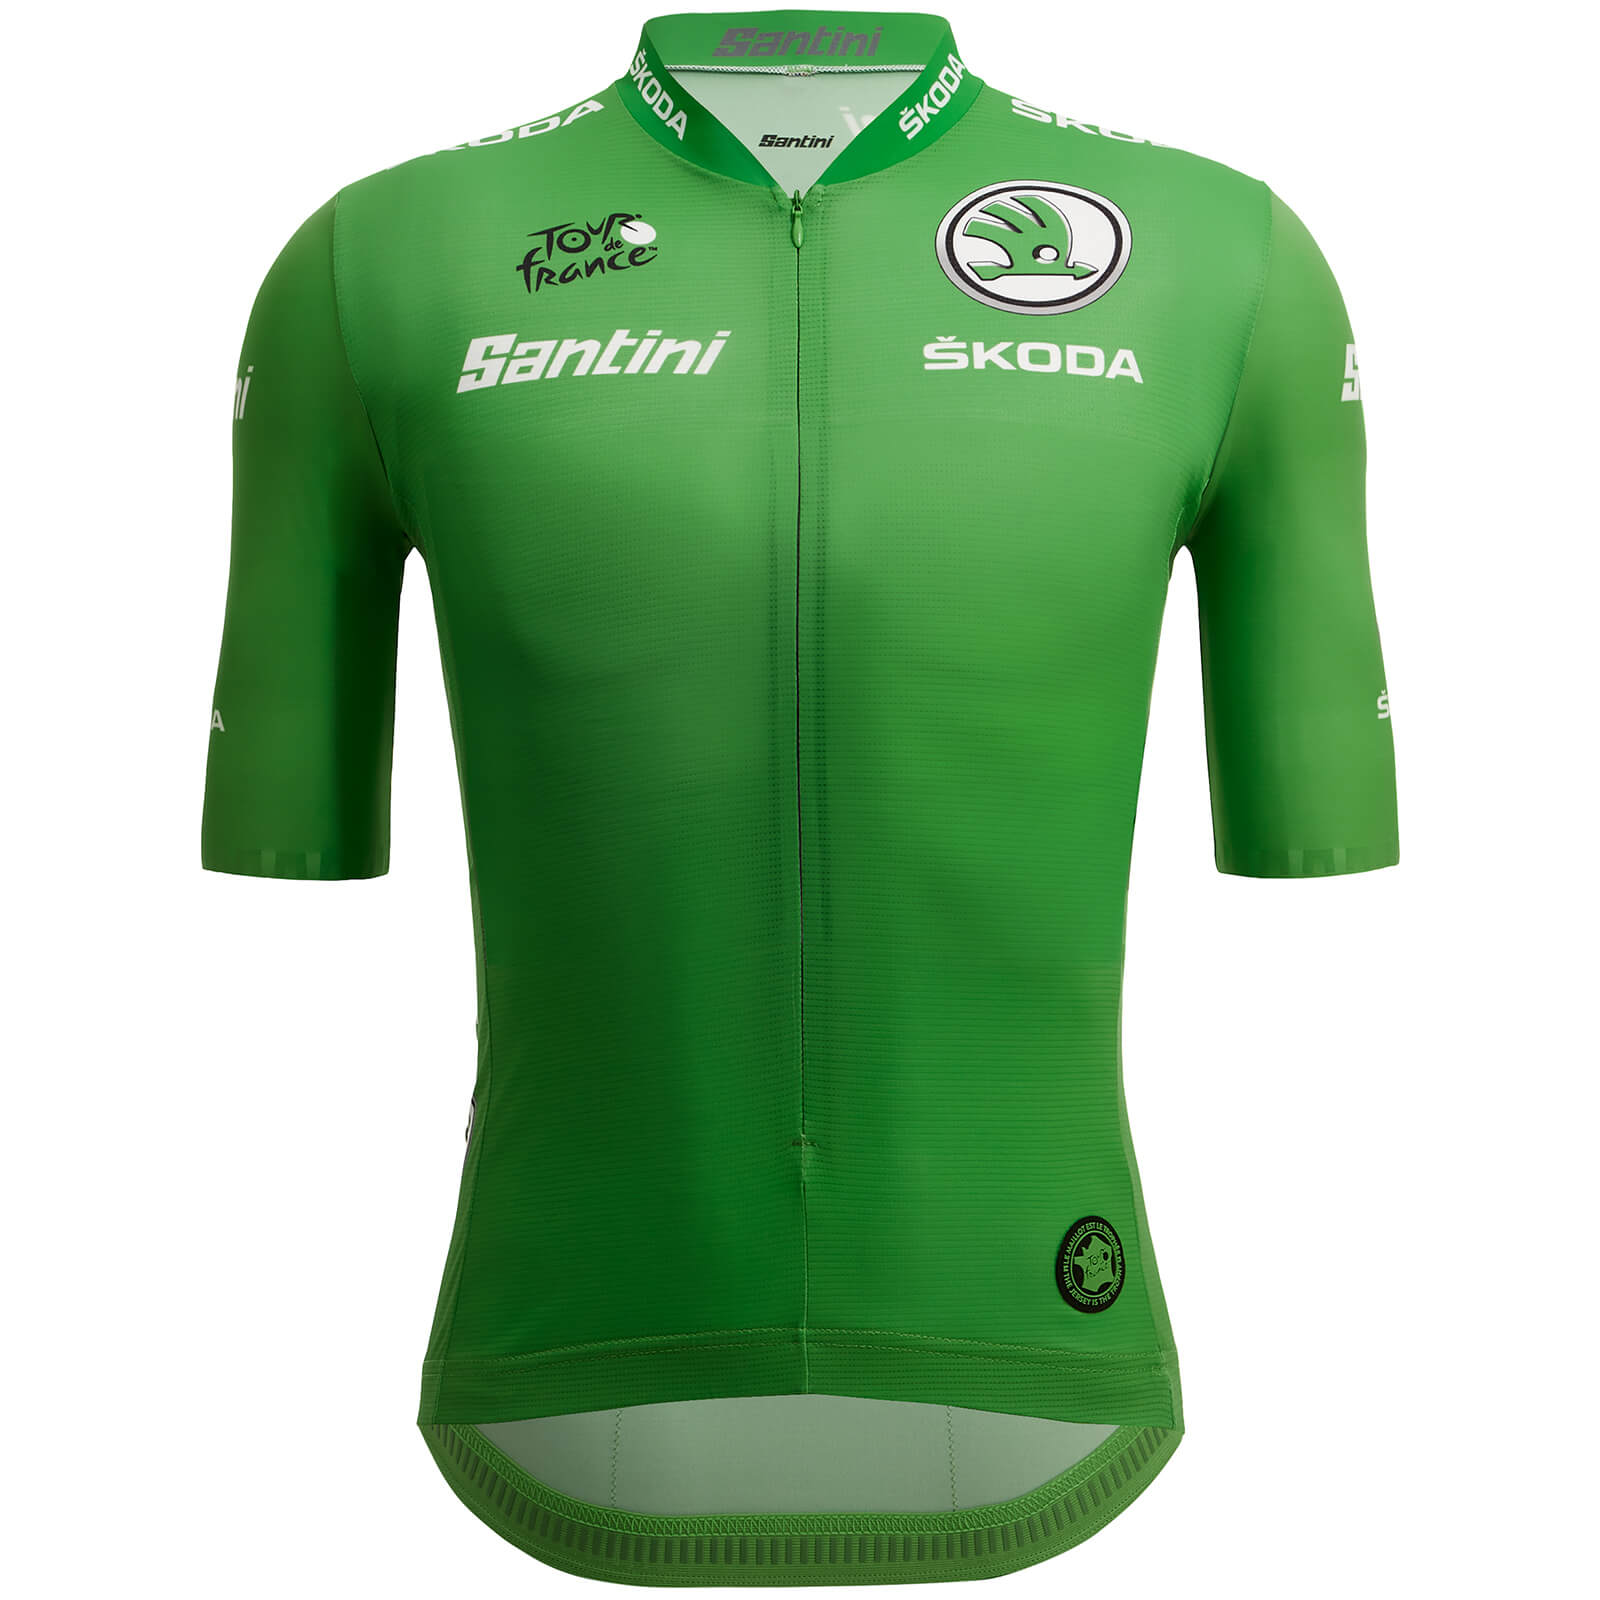 Santini Tour de France Sprinters Jersey - XL